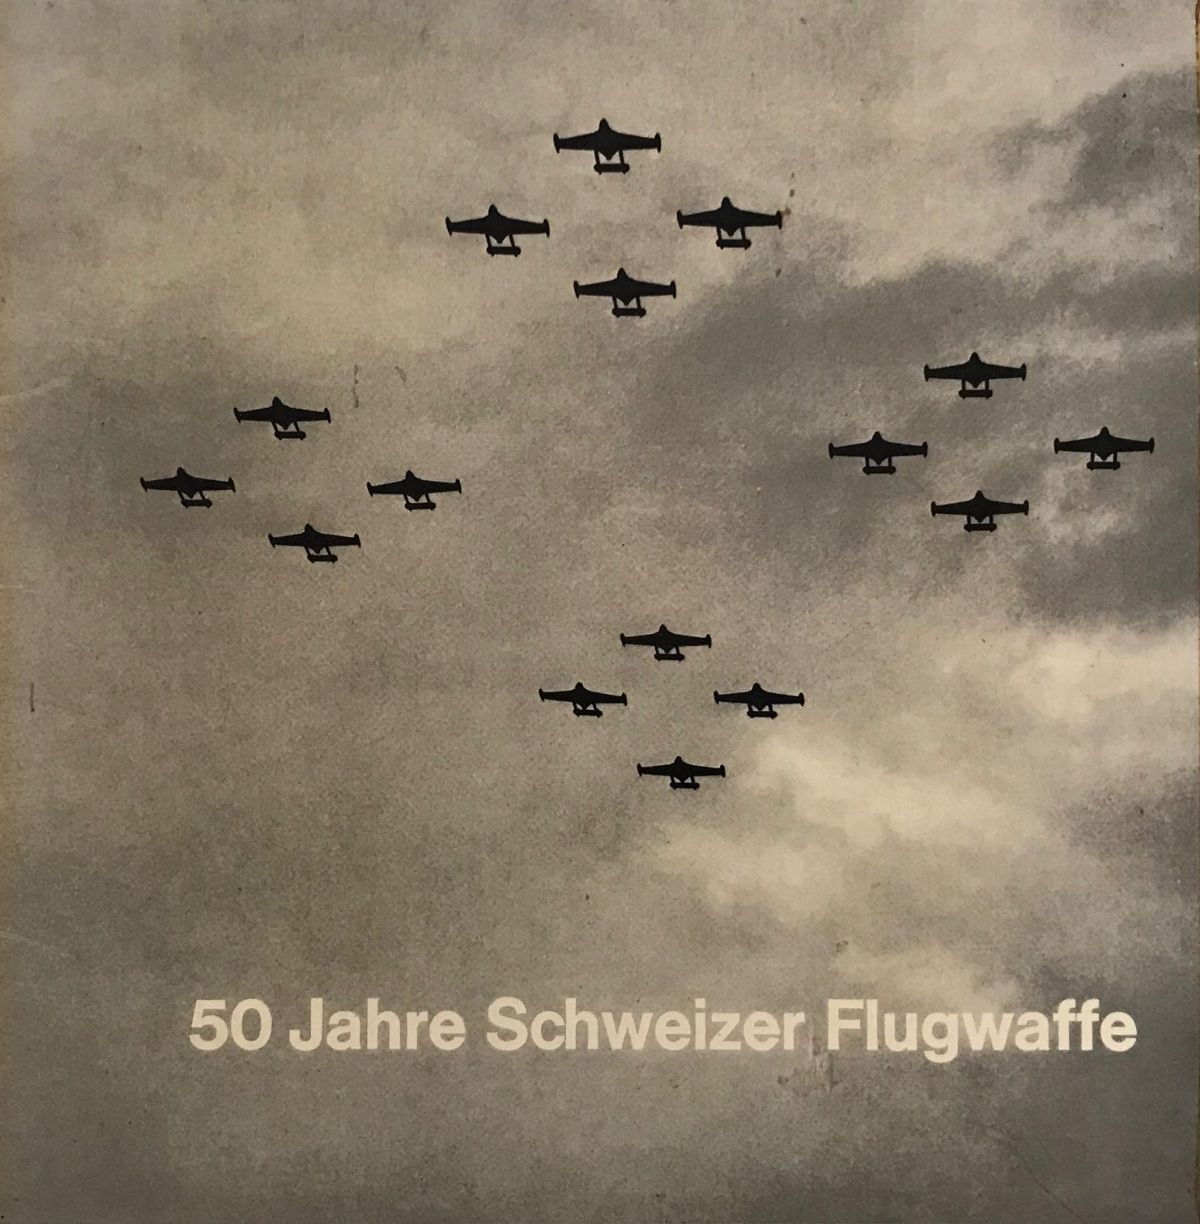 SWISS AIR FORCE / SCHWEIZER FLUGWAFFE: 50 Years